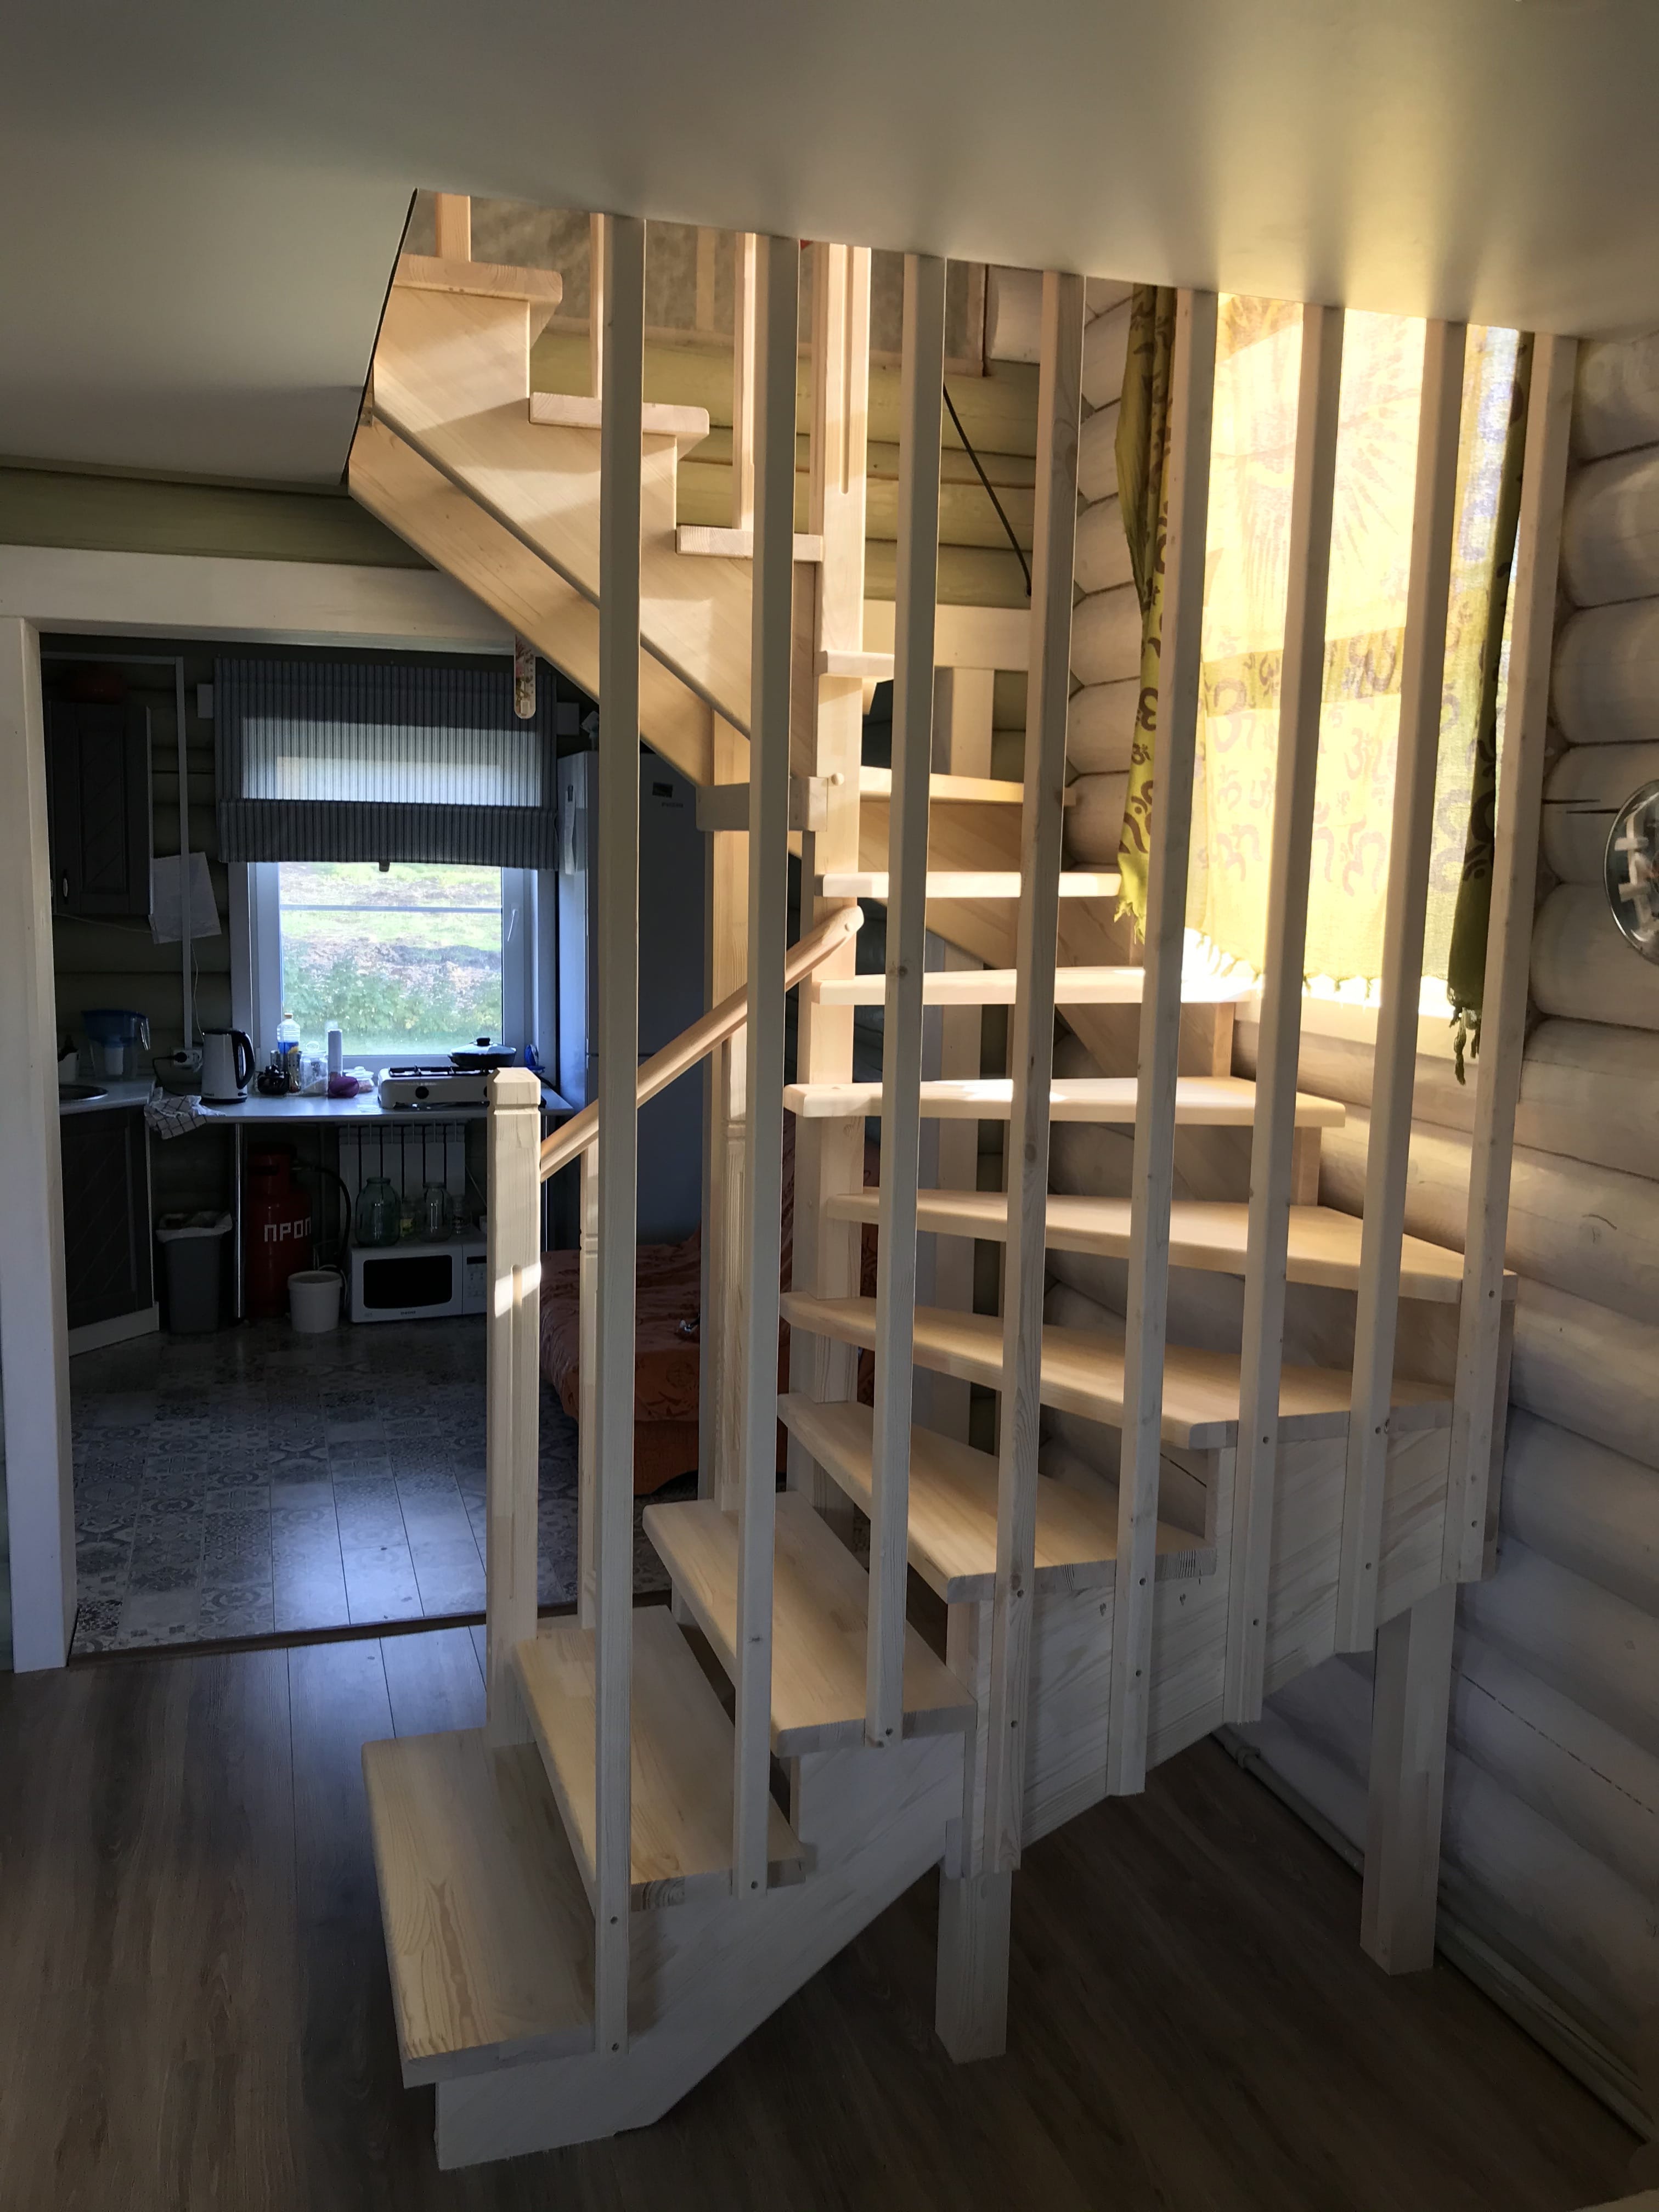 Картинка П - образная деревянная лестница с 8-ю поворотными ступенями.